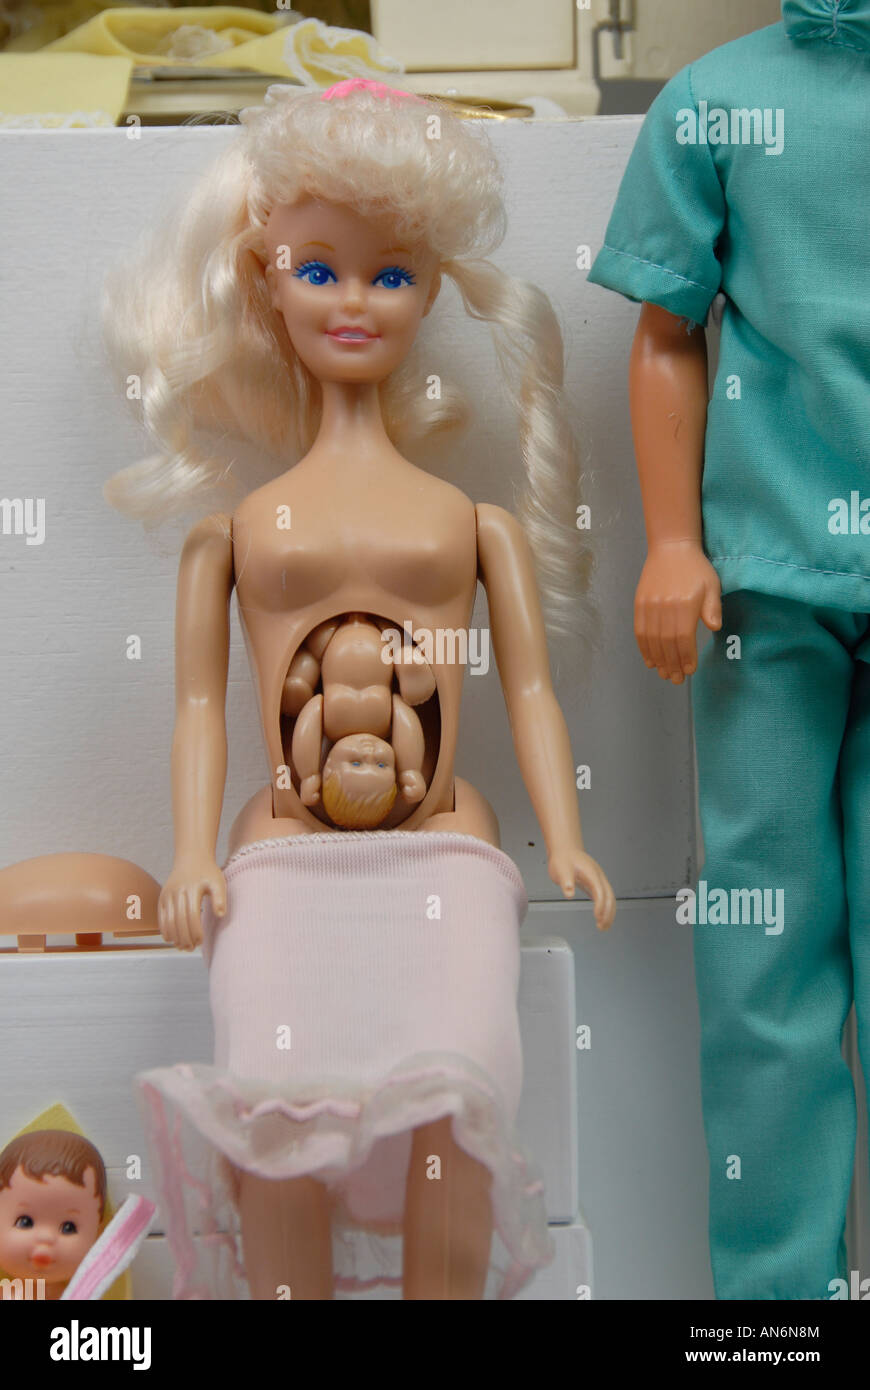 Schwanger Midge Barbie mit einer abnehmbaren Beule mit einem artikulierten  Feten inmitten Barbie Set Puppe Ausstellung im Spielzeugmuseum in Prag  Tschechische Republik Stockfotografie - Alamy